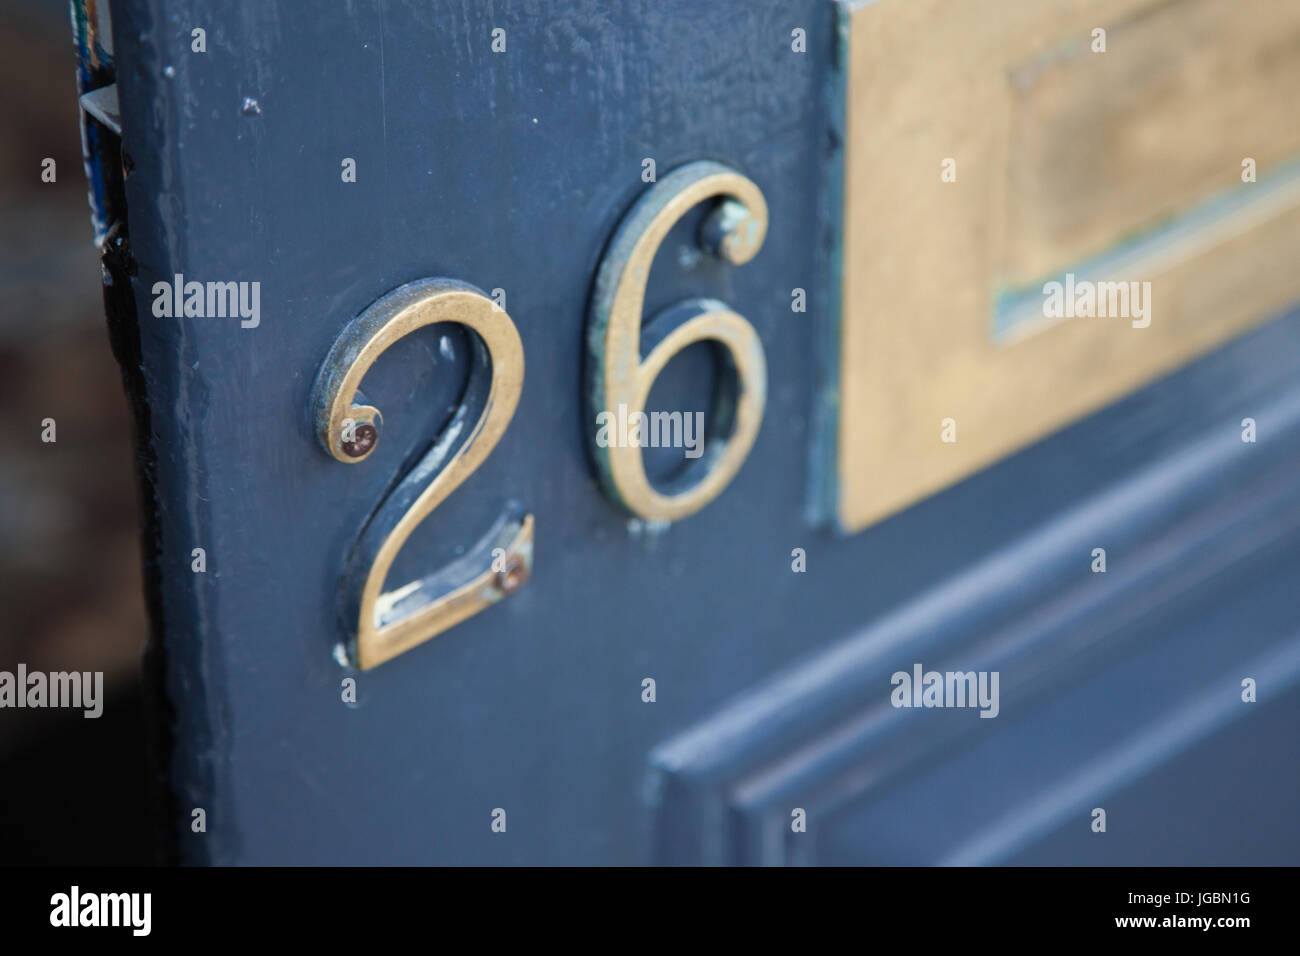 Building Address / Door Number 26 Stock Photo